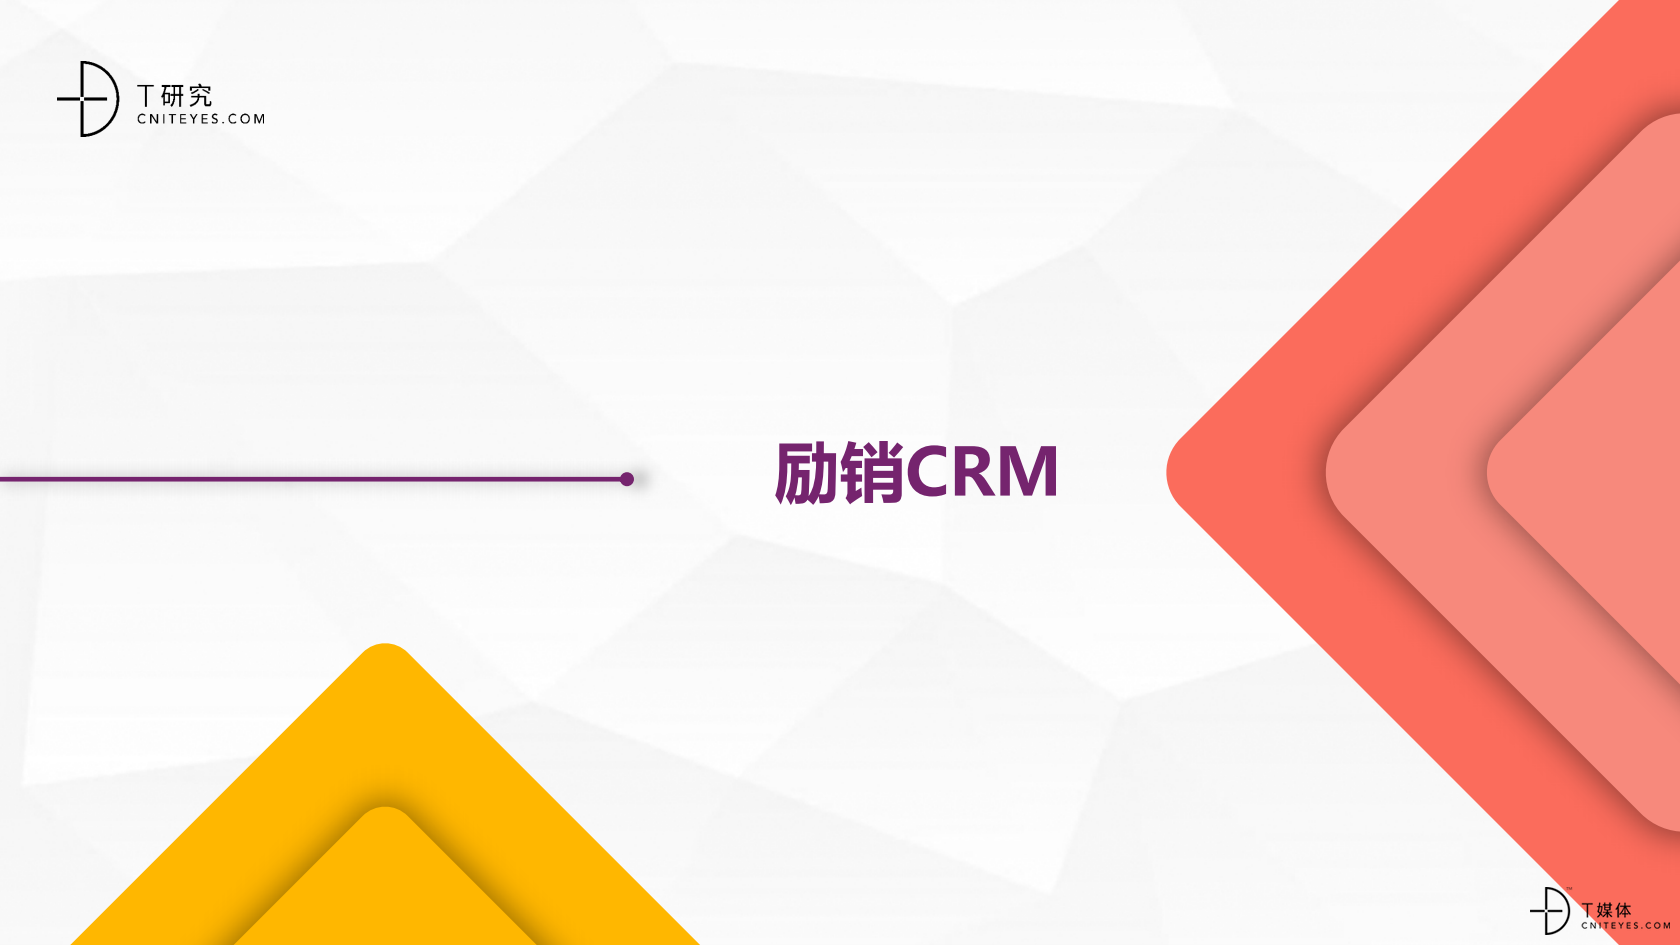 2_2020中国CRM指数测评报告v1.5_31.png